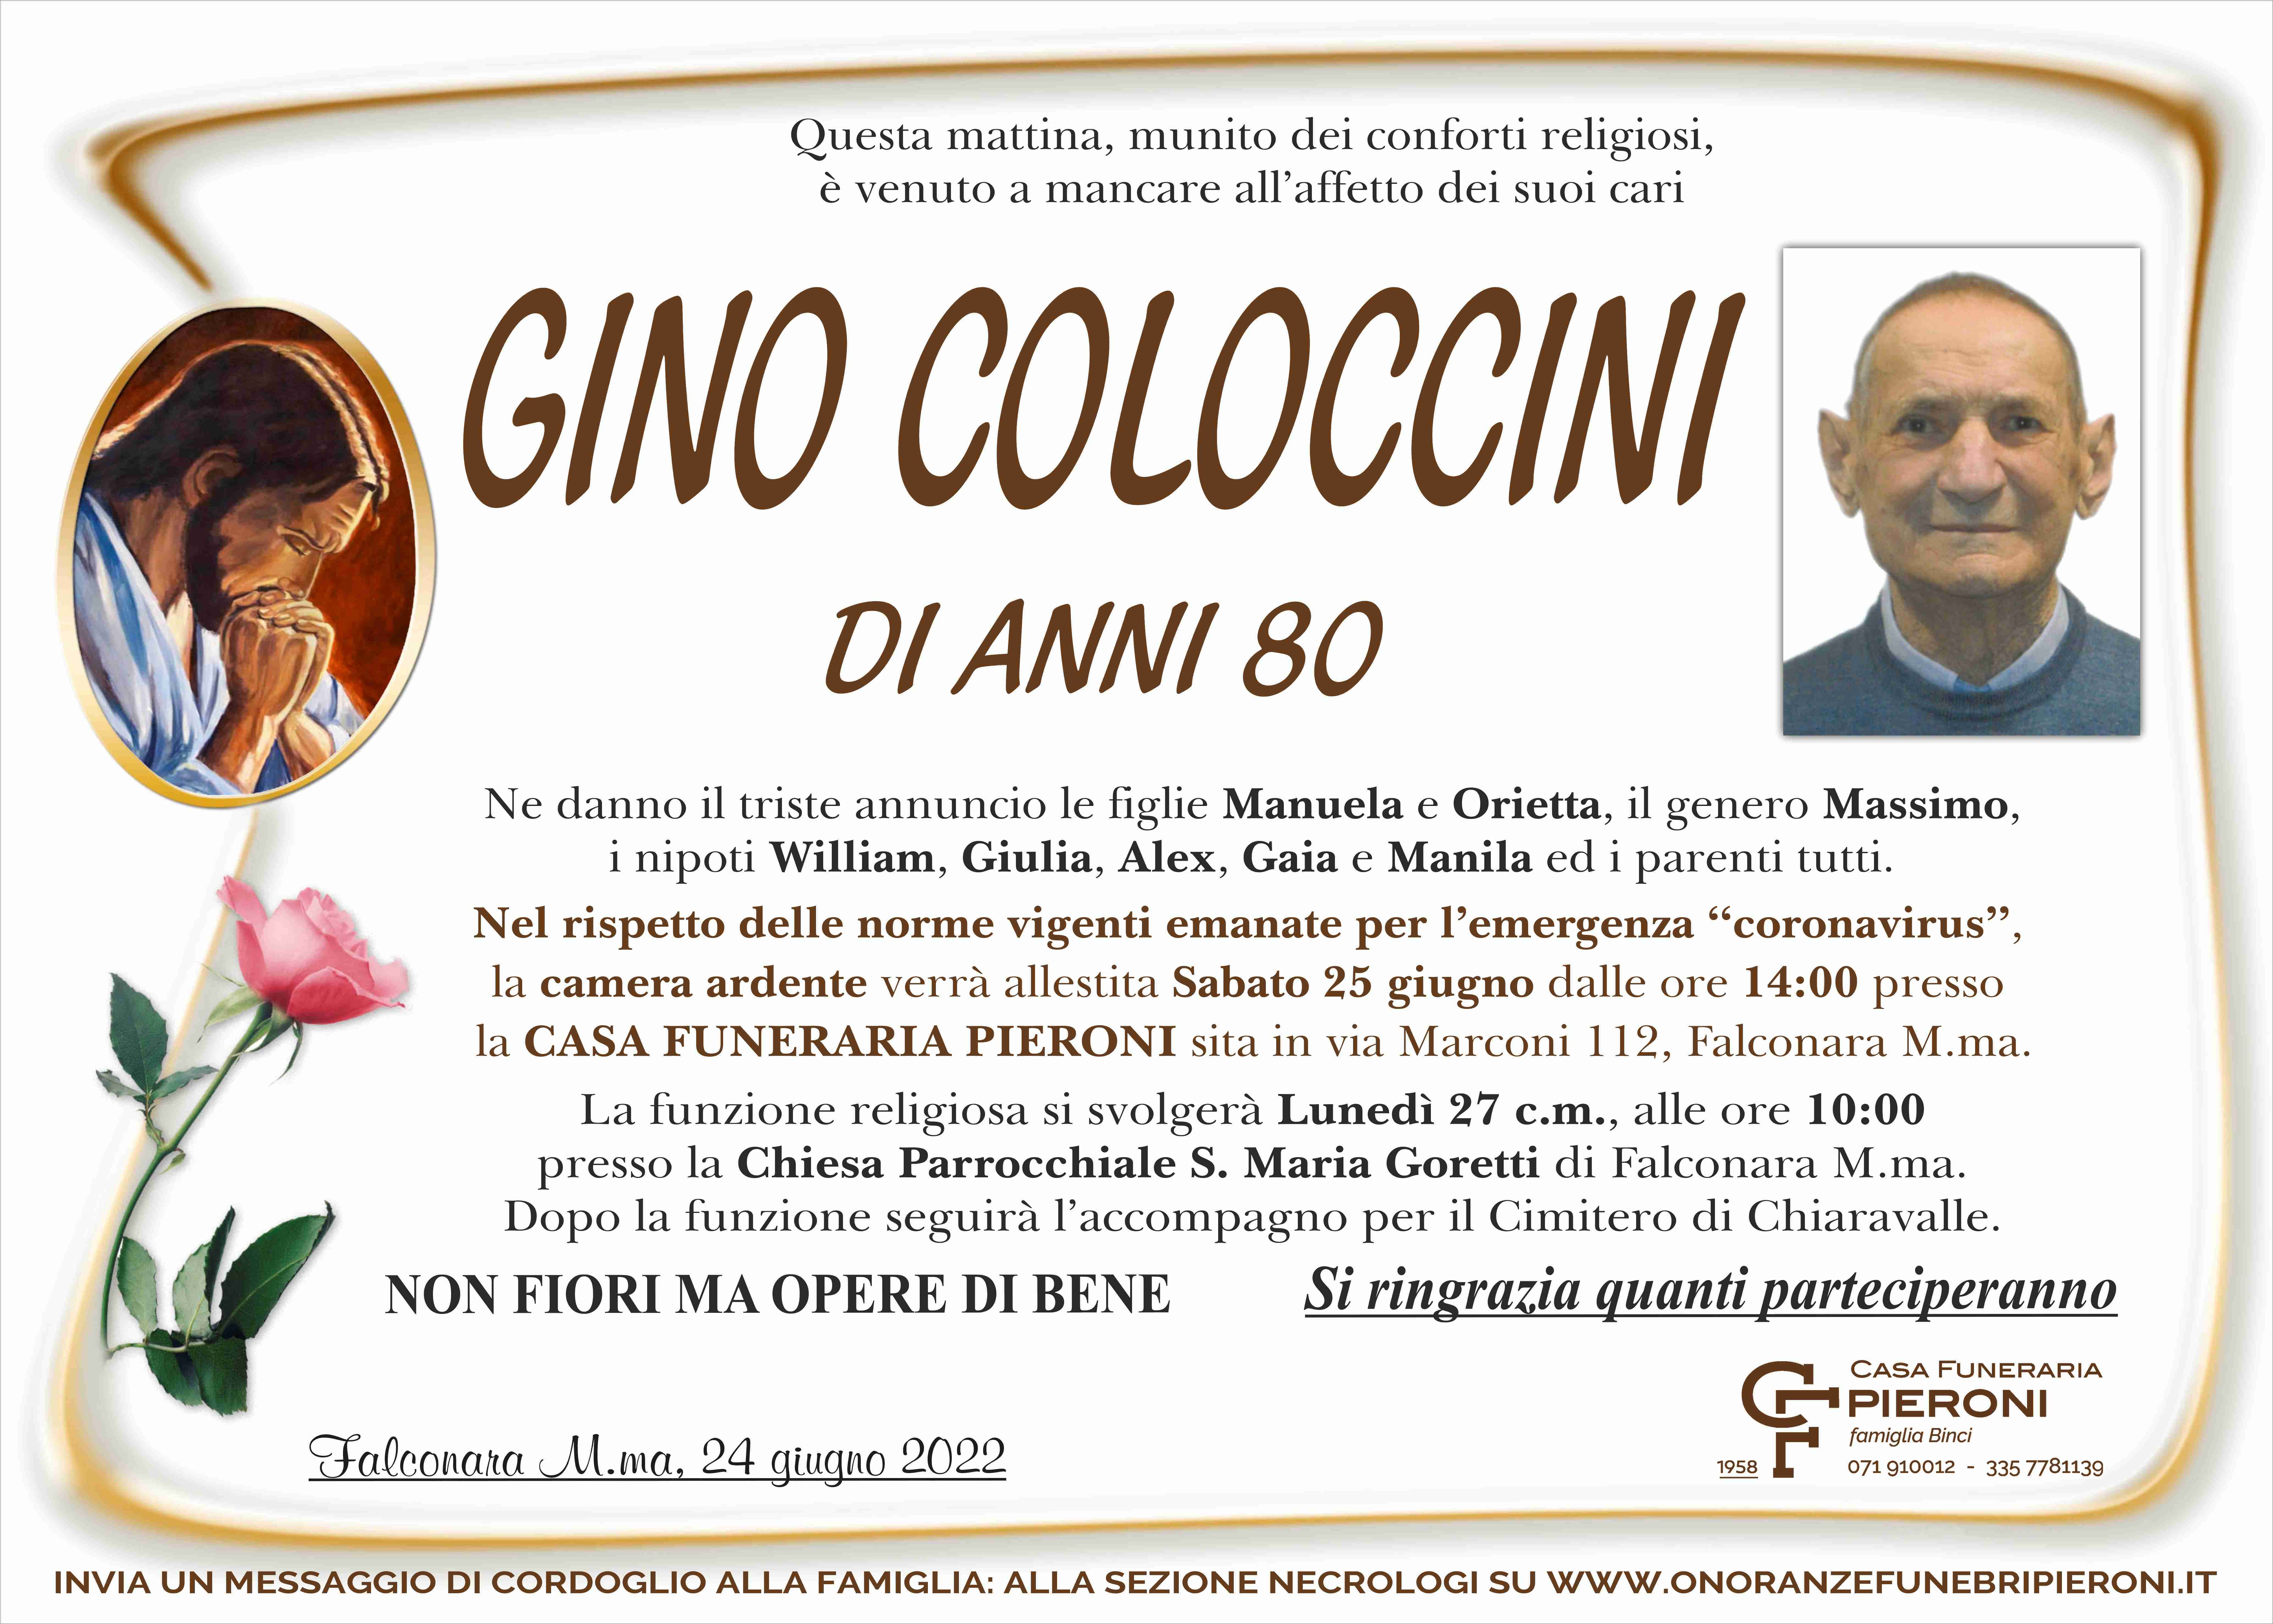 Gino Coloccini